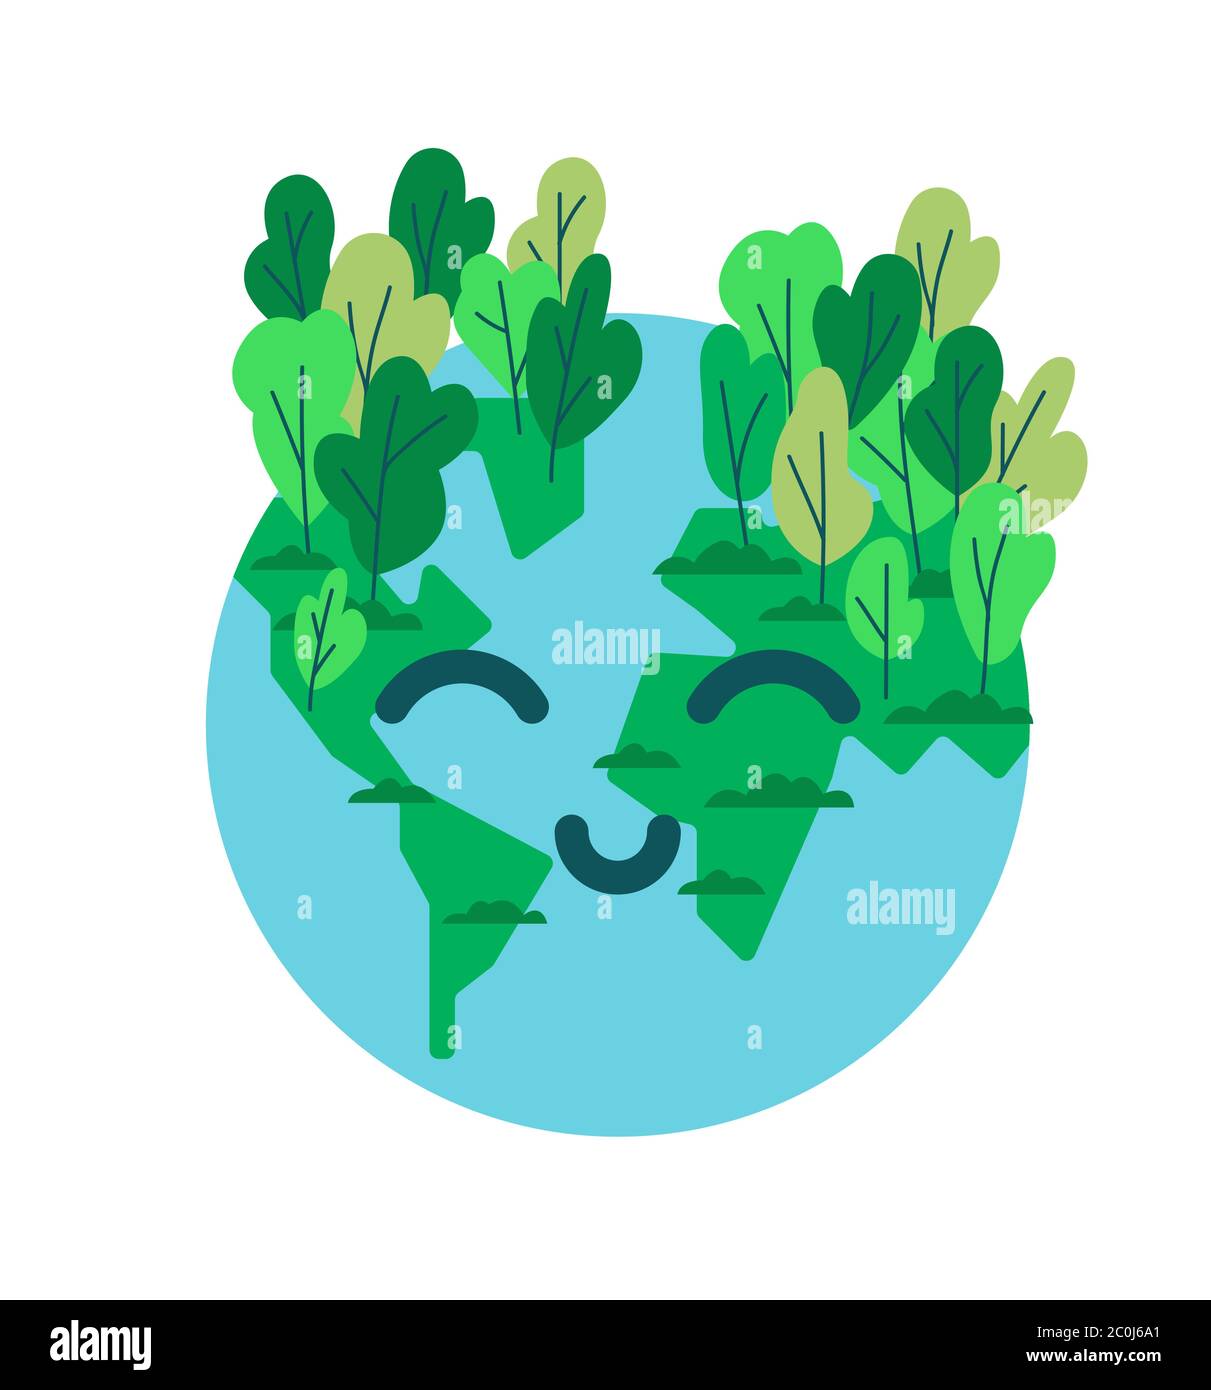 Bonne planète Terre plat dessin animé visage smiley avec forêt d'arbres verts pour l'aide de l'environnement ou concept écologique sur fond blanc isolé. Illustration de Vecteur